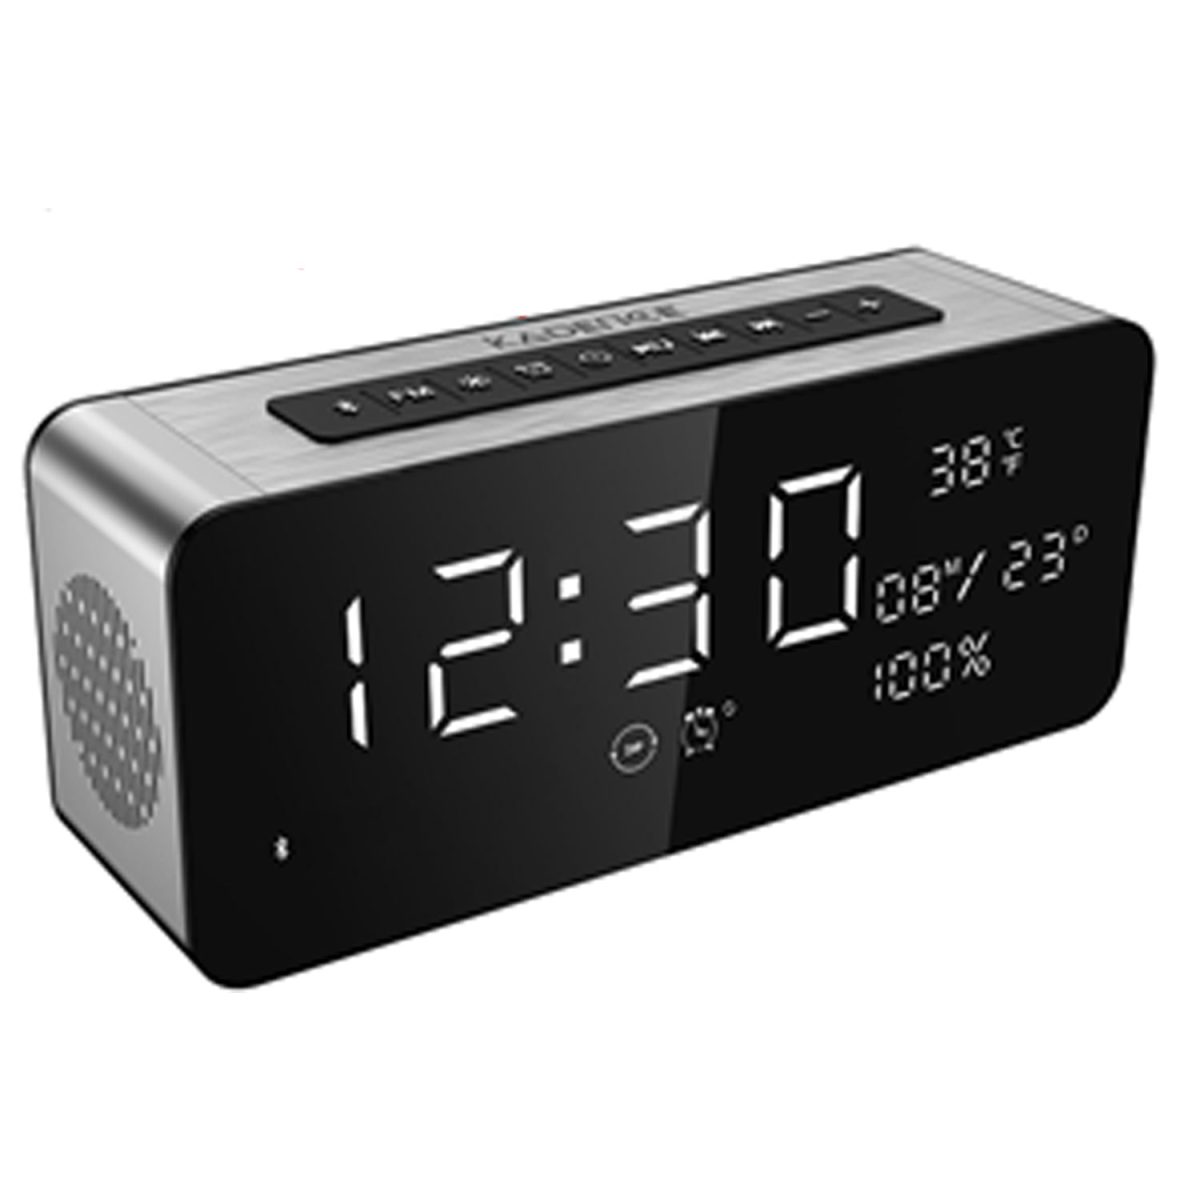 Bluetooth Speaker with Alarm Clock and Temperature